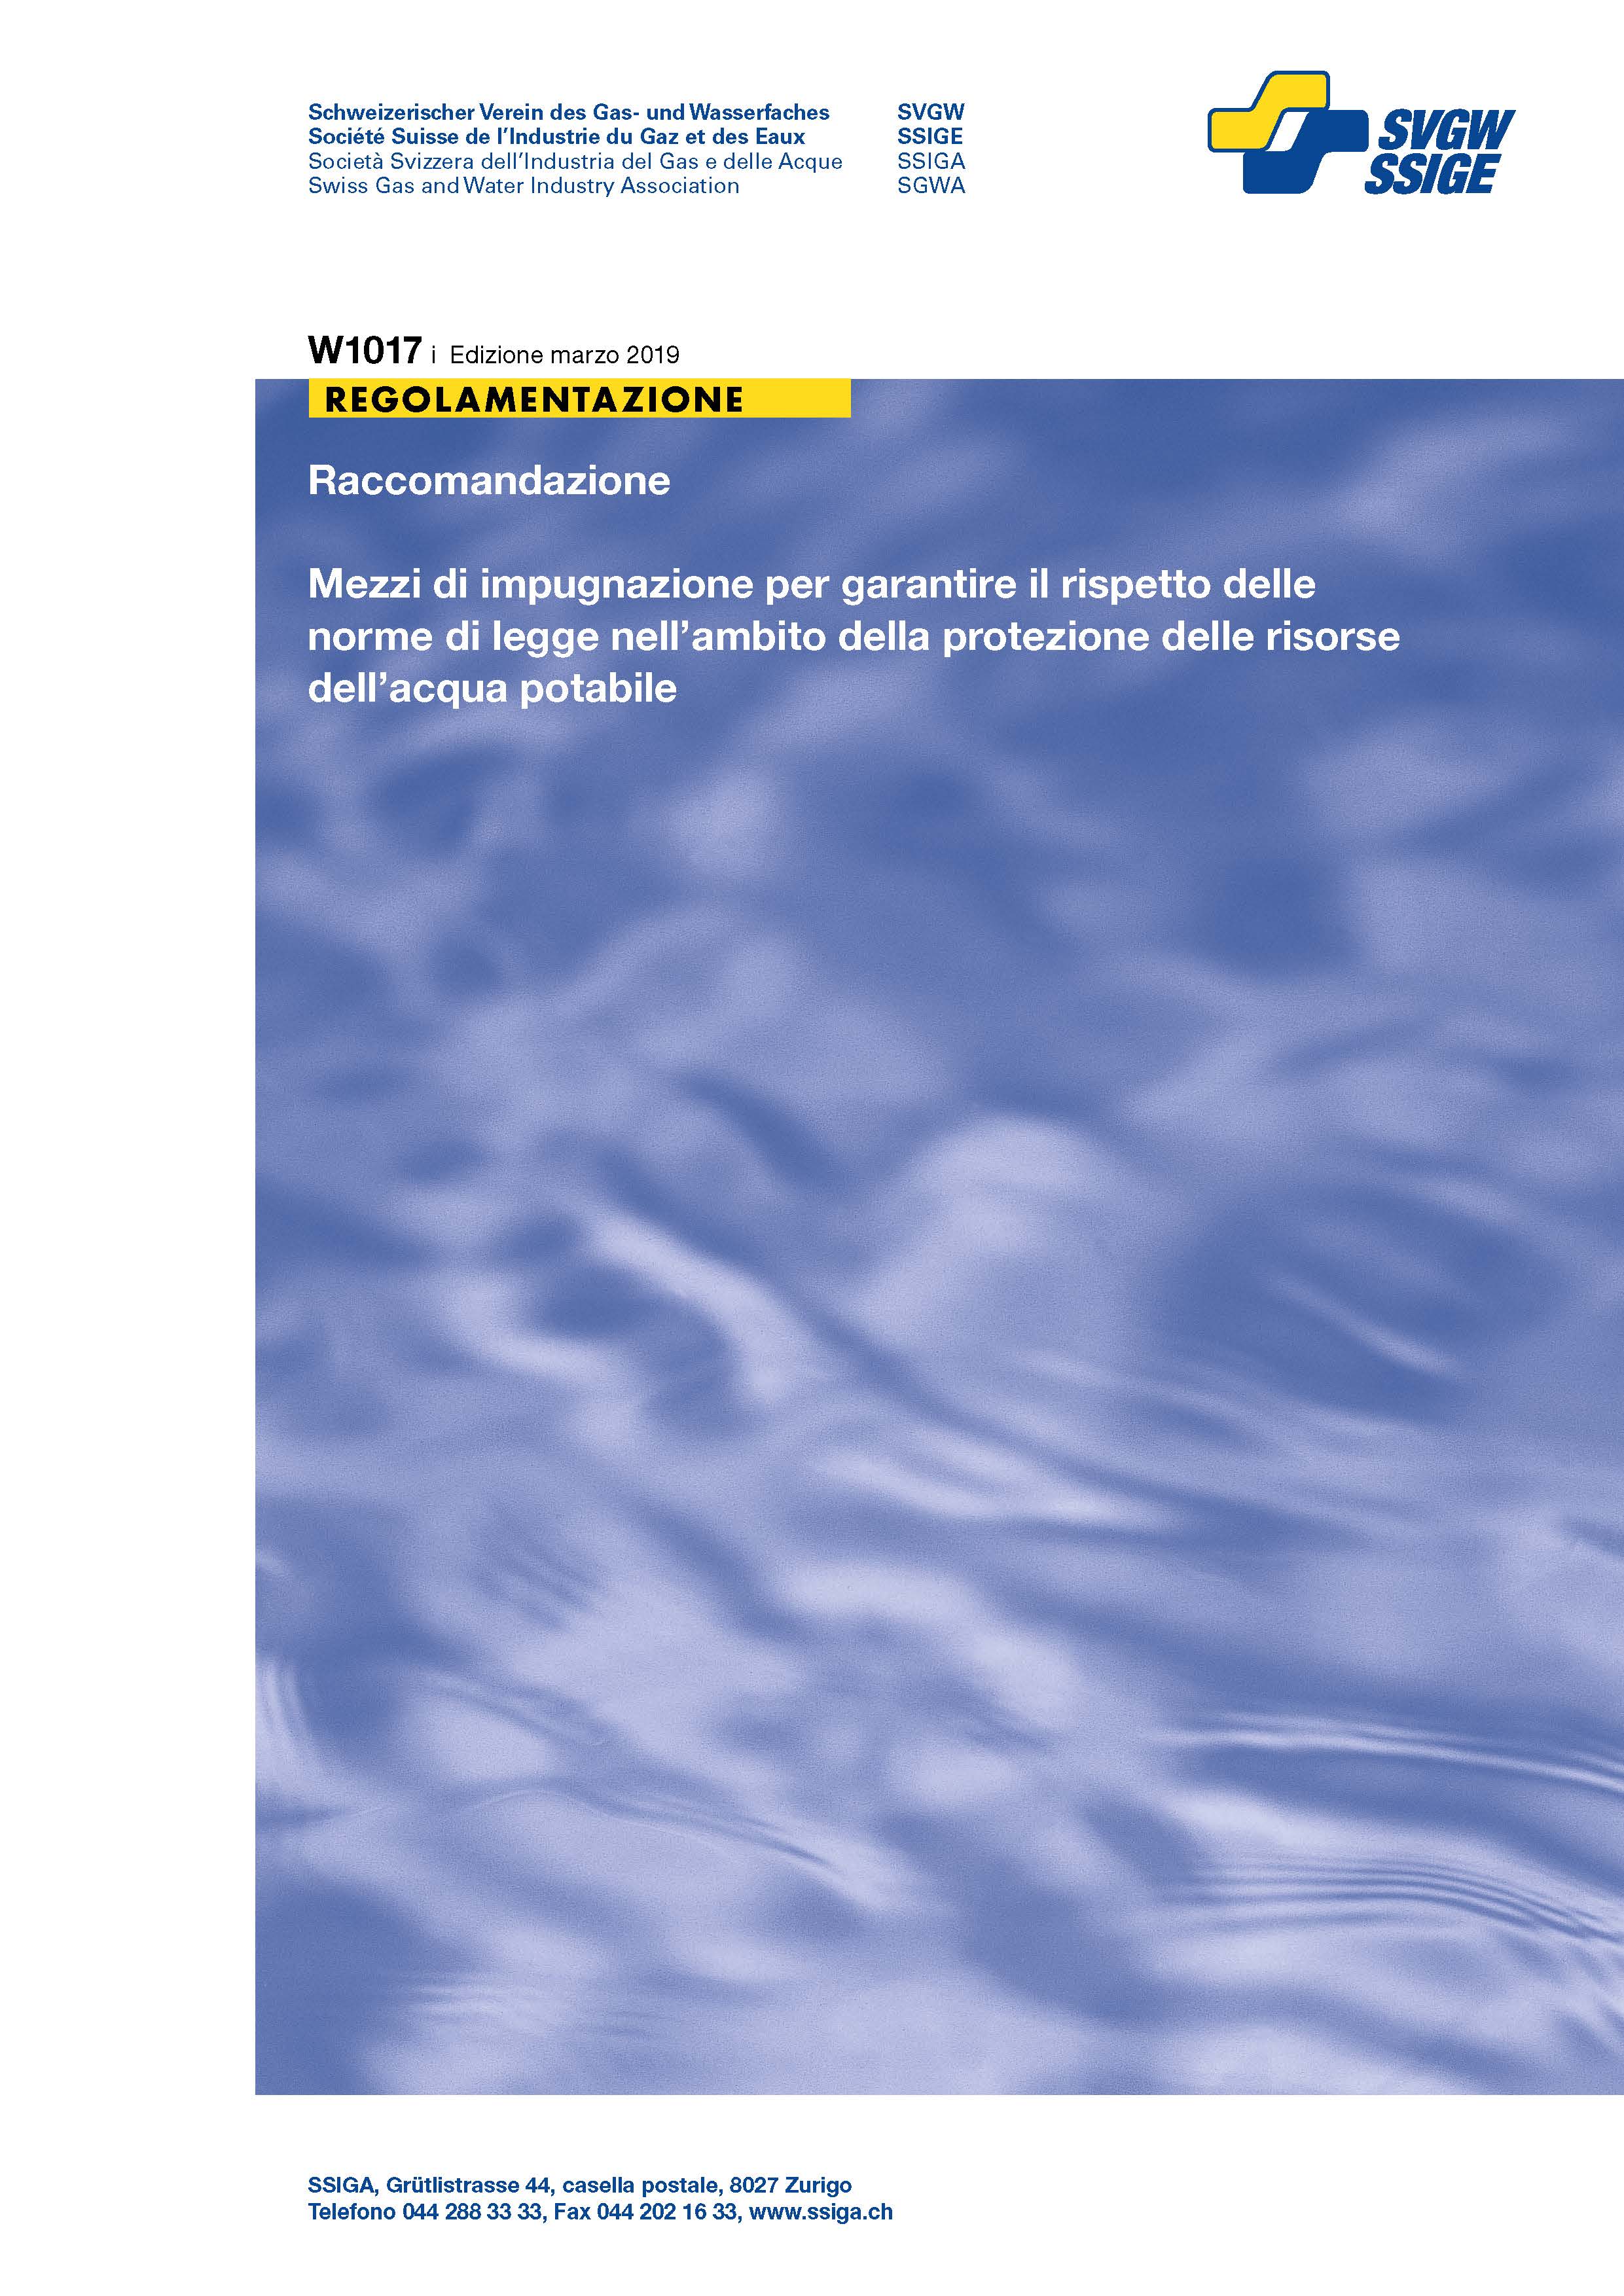 W1017 i Raccomandazione; Mezzi di impugnazione per garantire il rispetto delle norme di legge nell’ambito della protezione delle risorse dell’acqua potabile